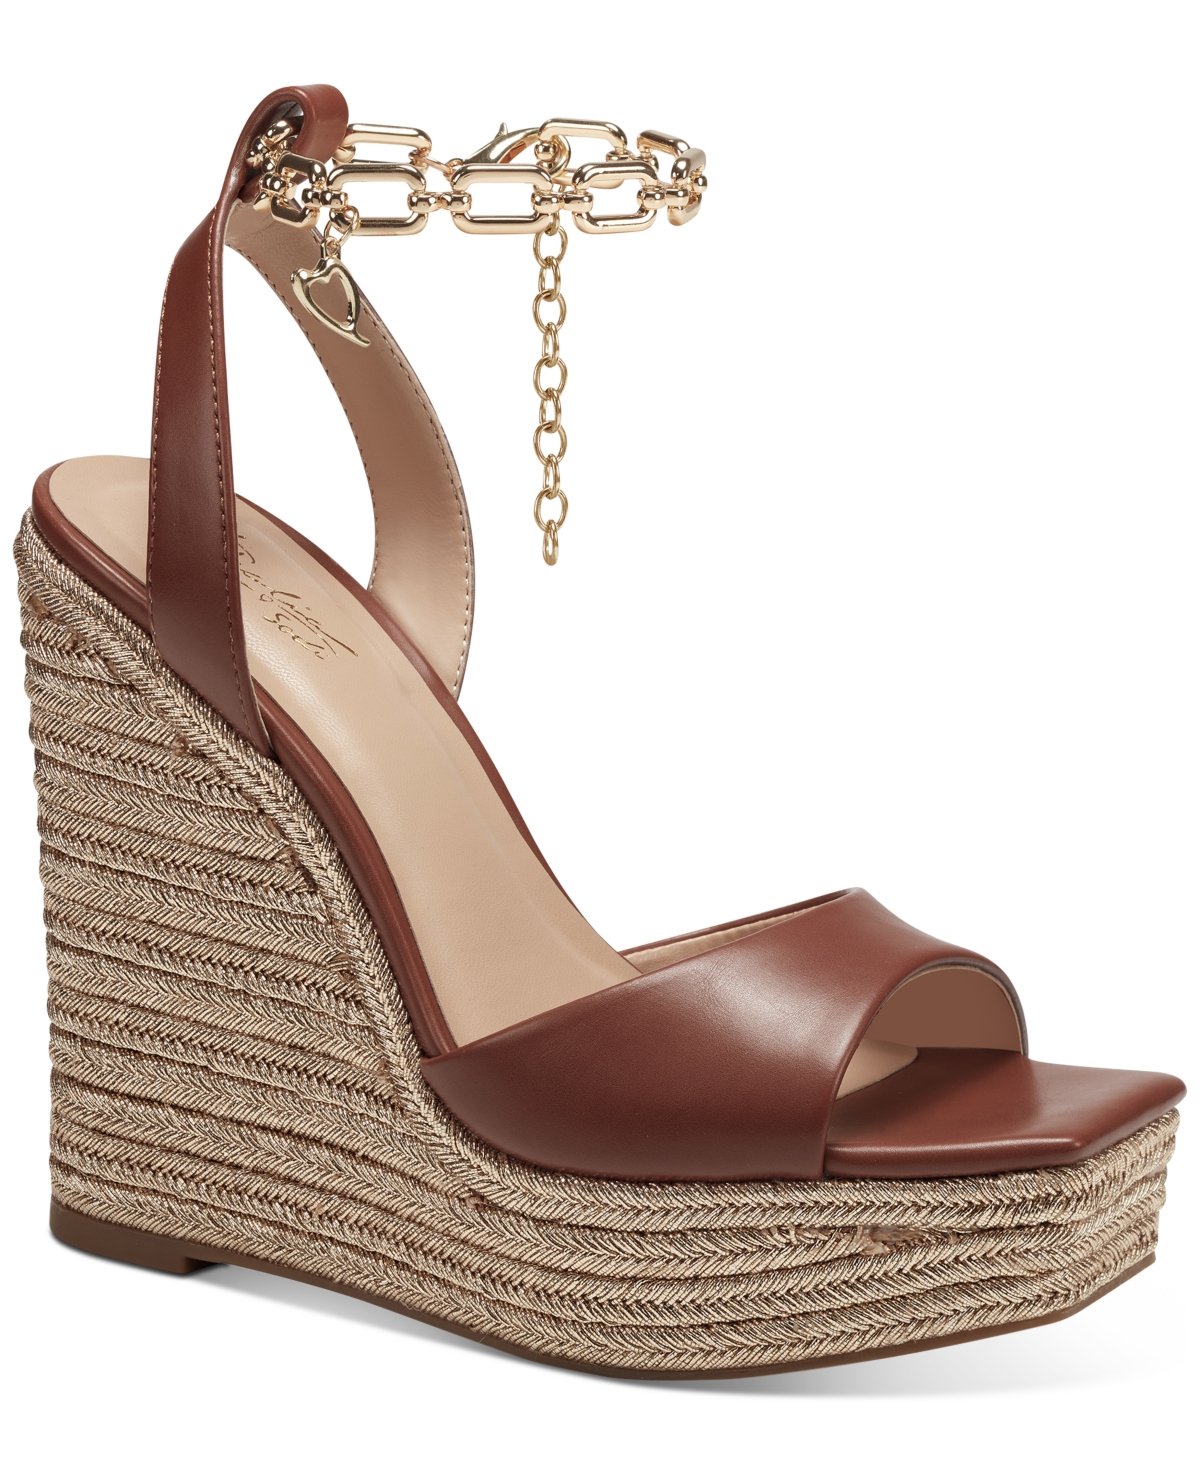 Thalia Sodi Womens Vada Leather Almond Toe Mid-Calf Fashion Boots 